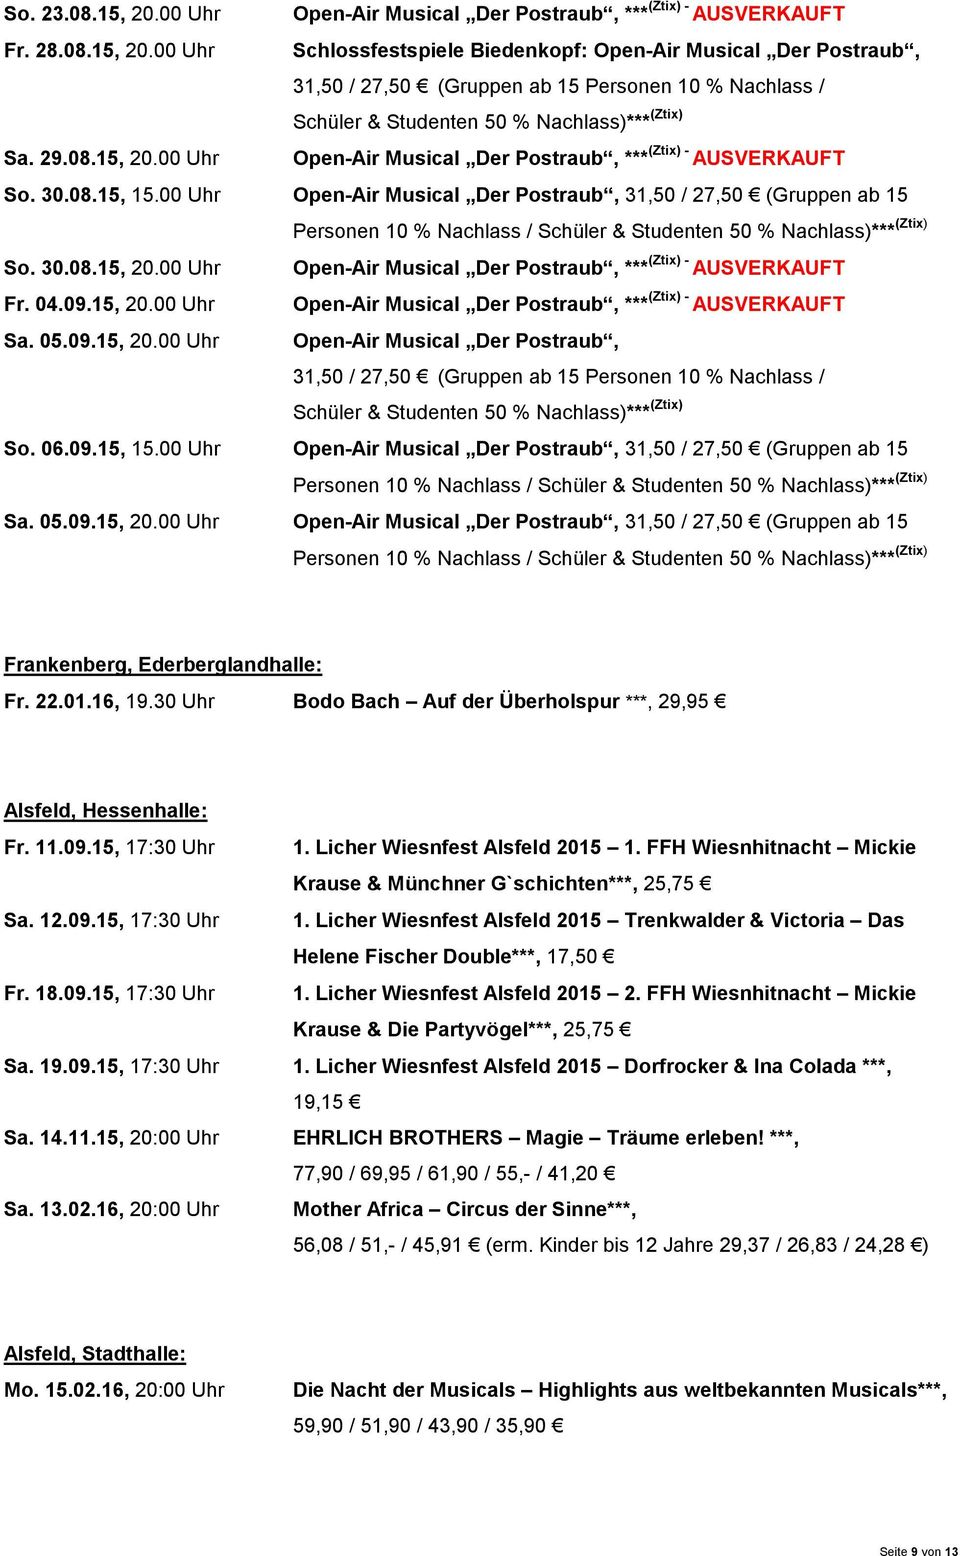 00 Uhr Open-Air Musical Der Postraub, 31,50 / 27,50 (Gruppen ab 15 Personen 10 % Nachlass / Schüler & Studenten 50 % Nachlass)*** (Ztix) So. 30.08.15, 20.